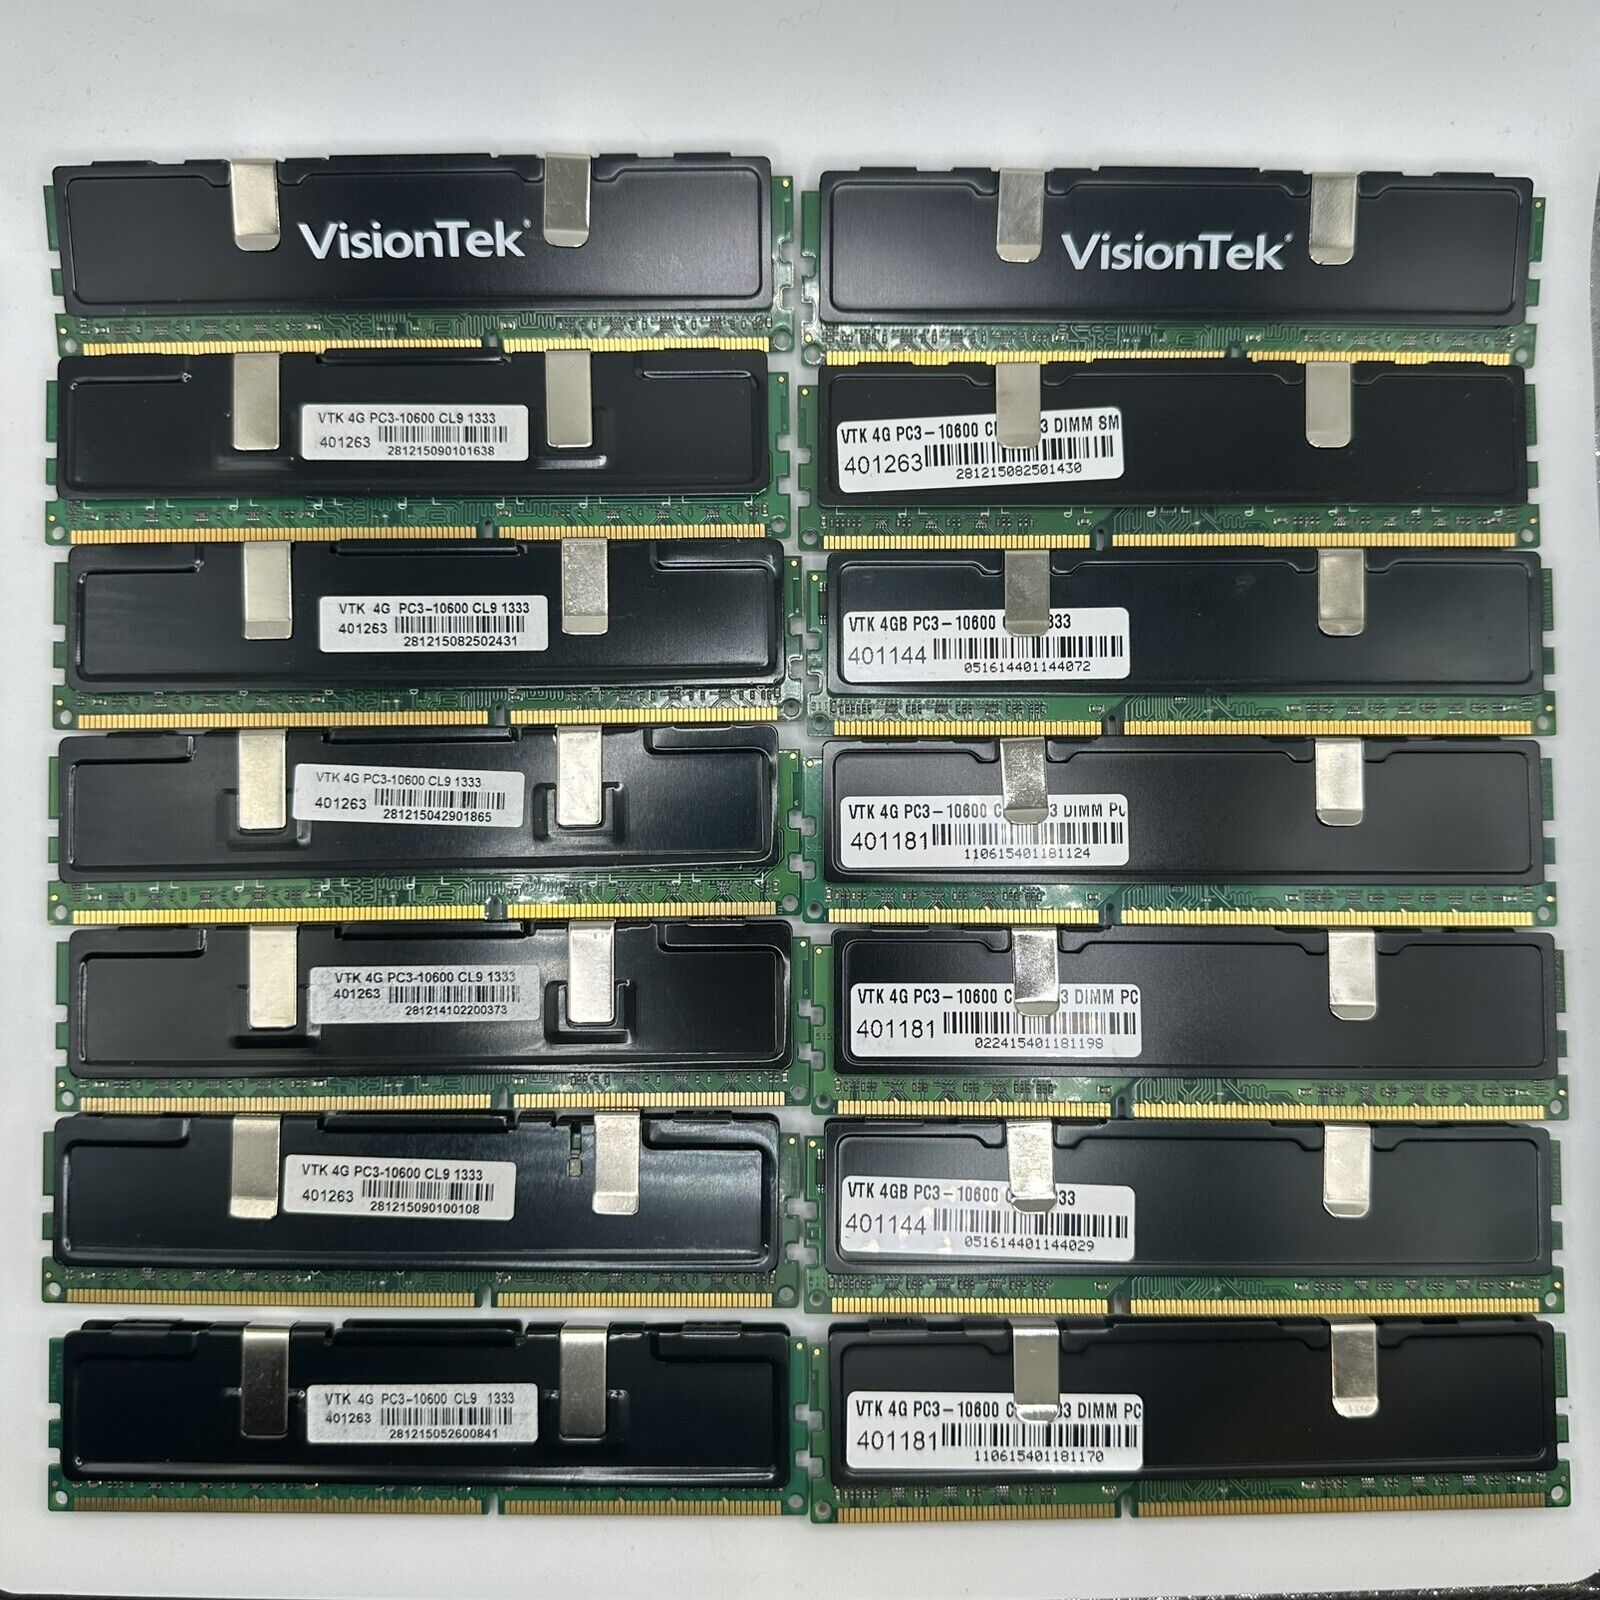 Lot of 14 VisionTek VTK 4G PC3-10600 CL9 1333 DDR3 SDRAM 1333MHz